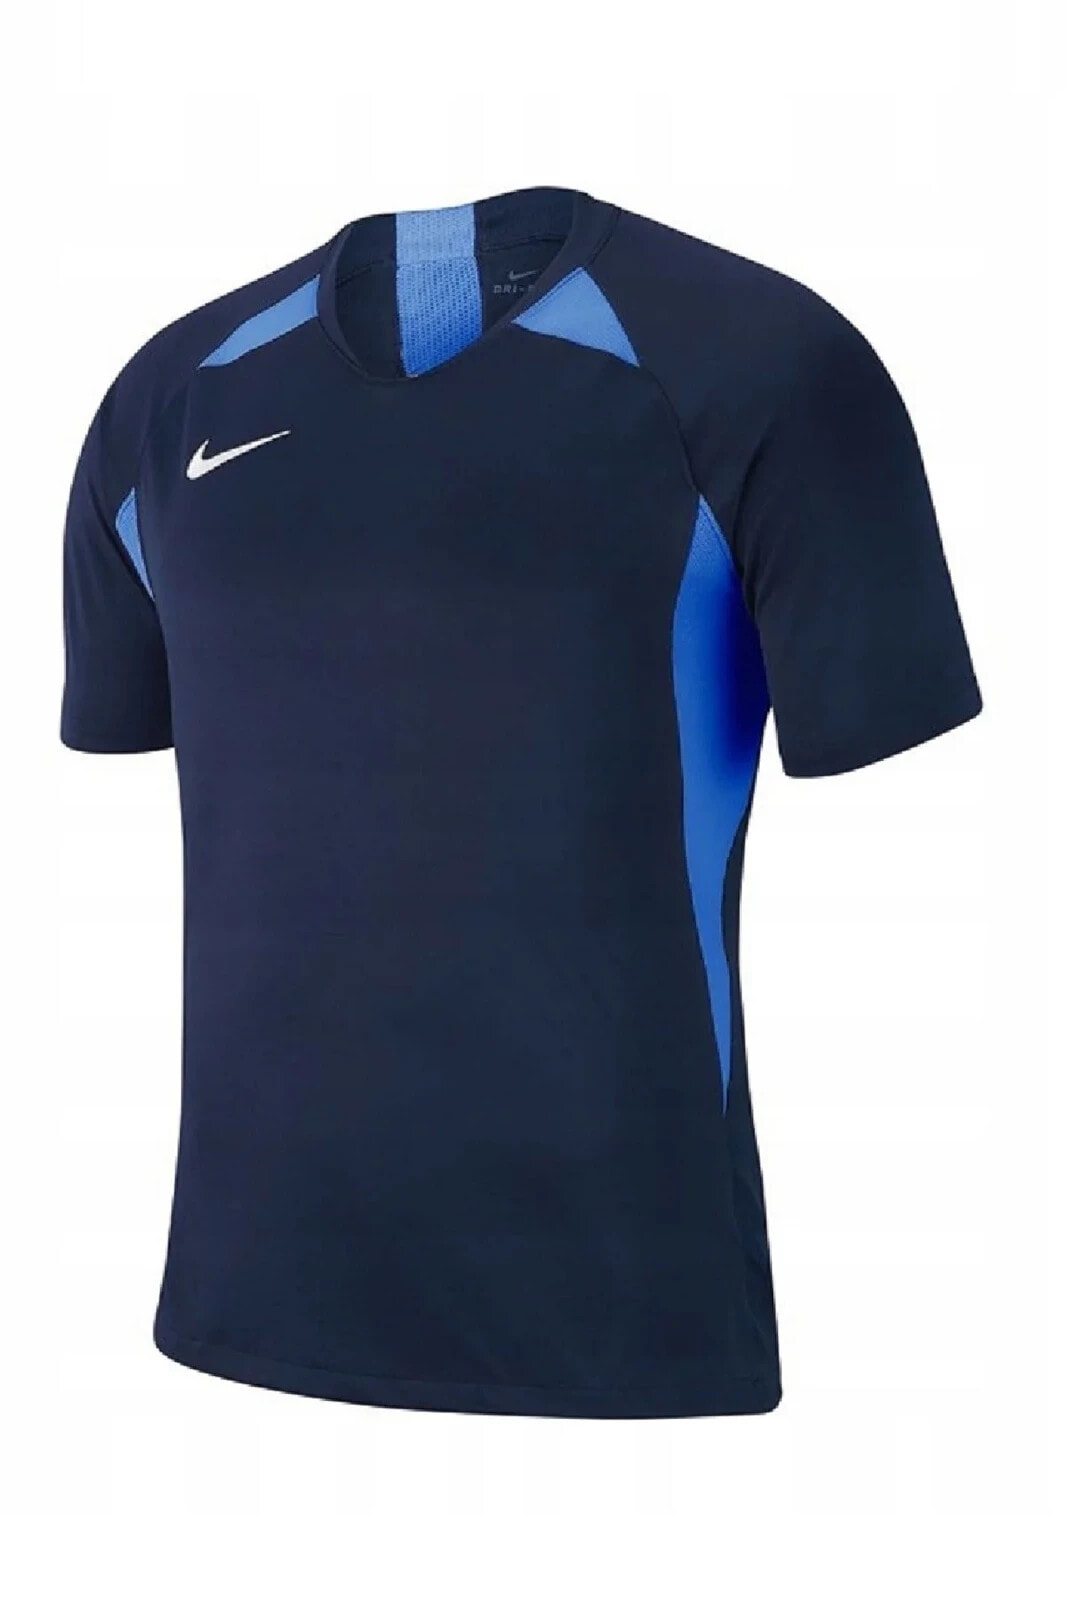 Erkek Mavi Şeritli Kısa Kol Spor T-shirt Aj0998-463